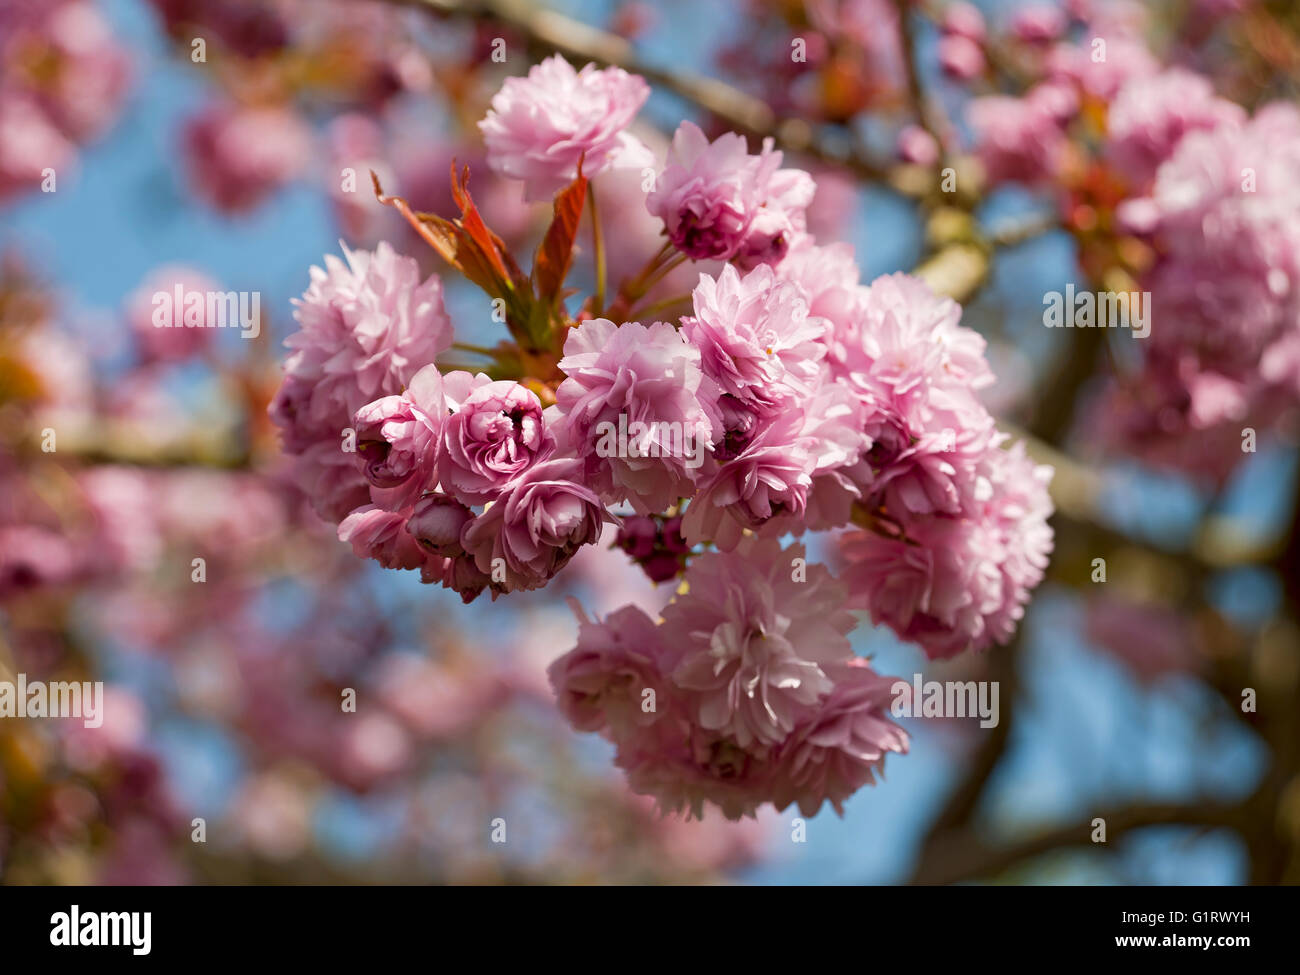 Gros plan de cerisier rose fleur fleur fleurs fleurs ornementales au printemps Angleterre Royaume-Uni Grande-Bretagne Banque D'Images